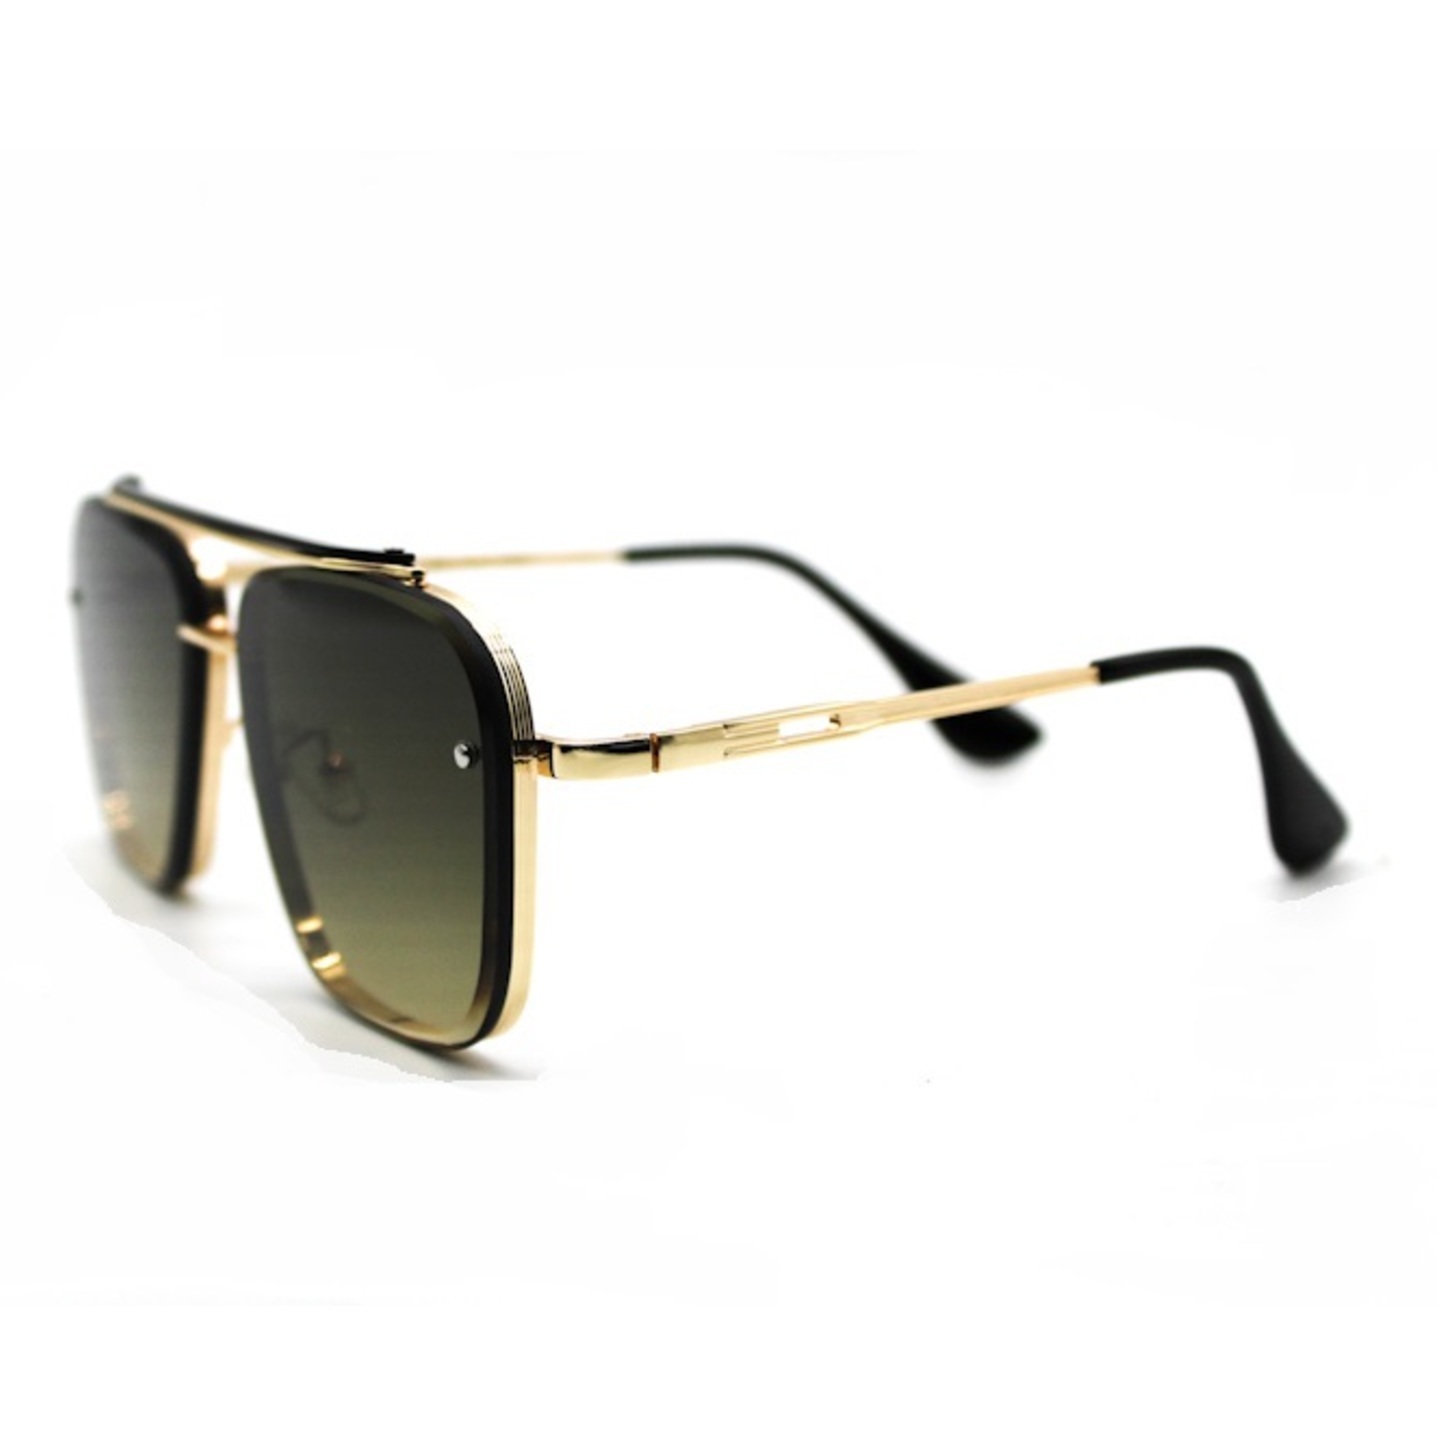 Golden Frame Dark Brown Sunglasses